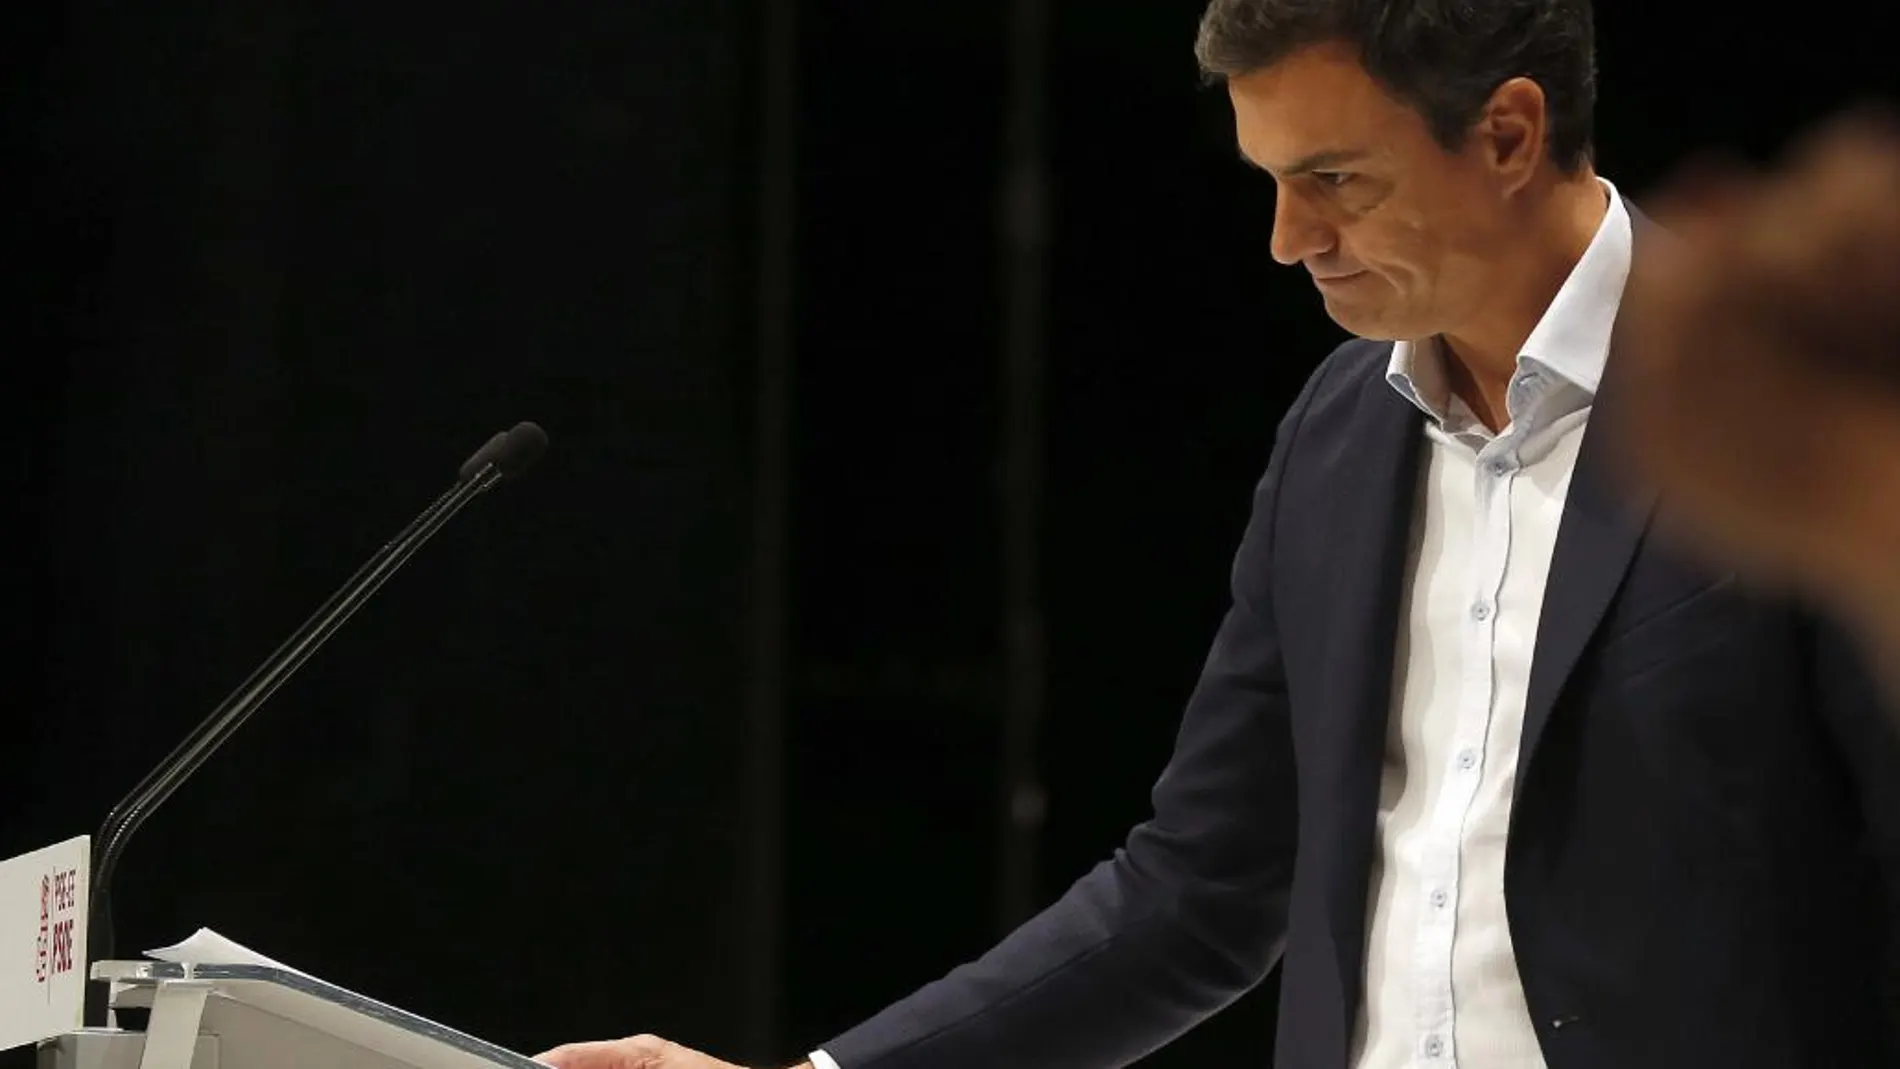 Pedro Sánchez dice la reforma constitucional es el camino para evitar la "conflictividad"